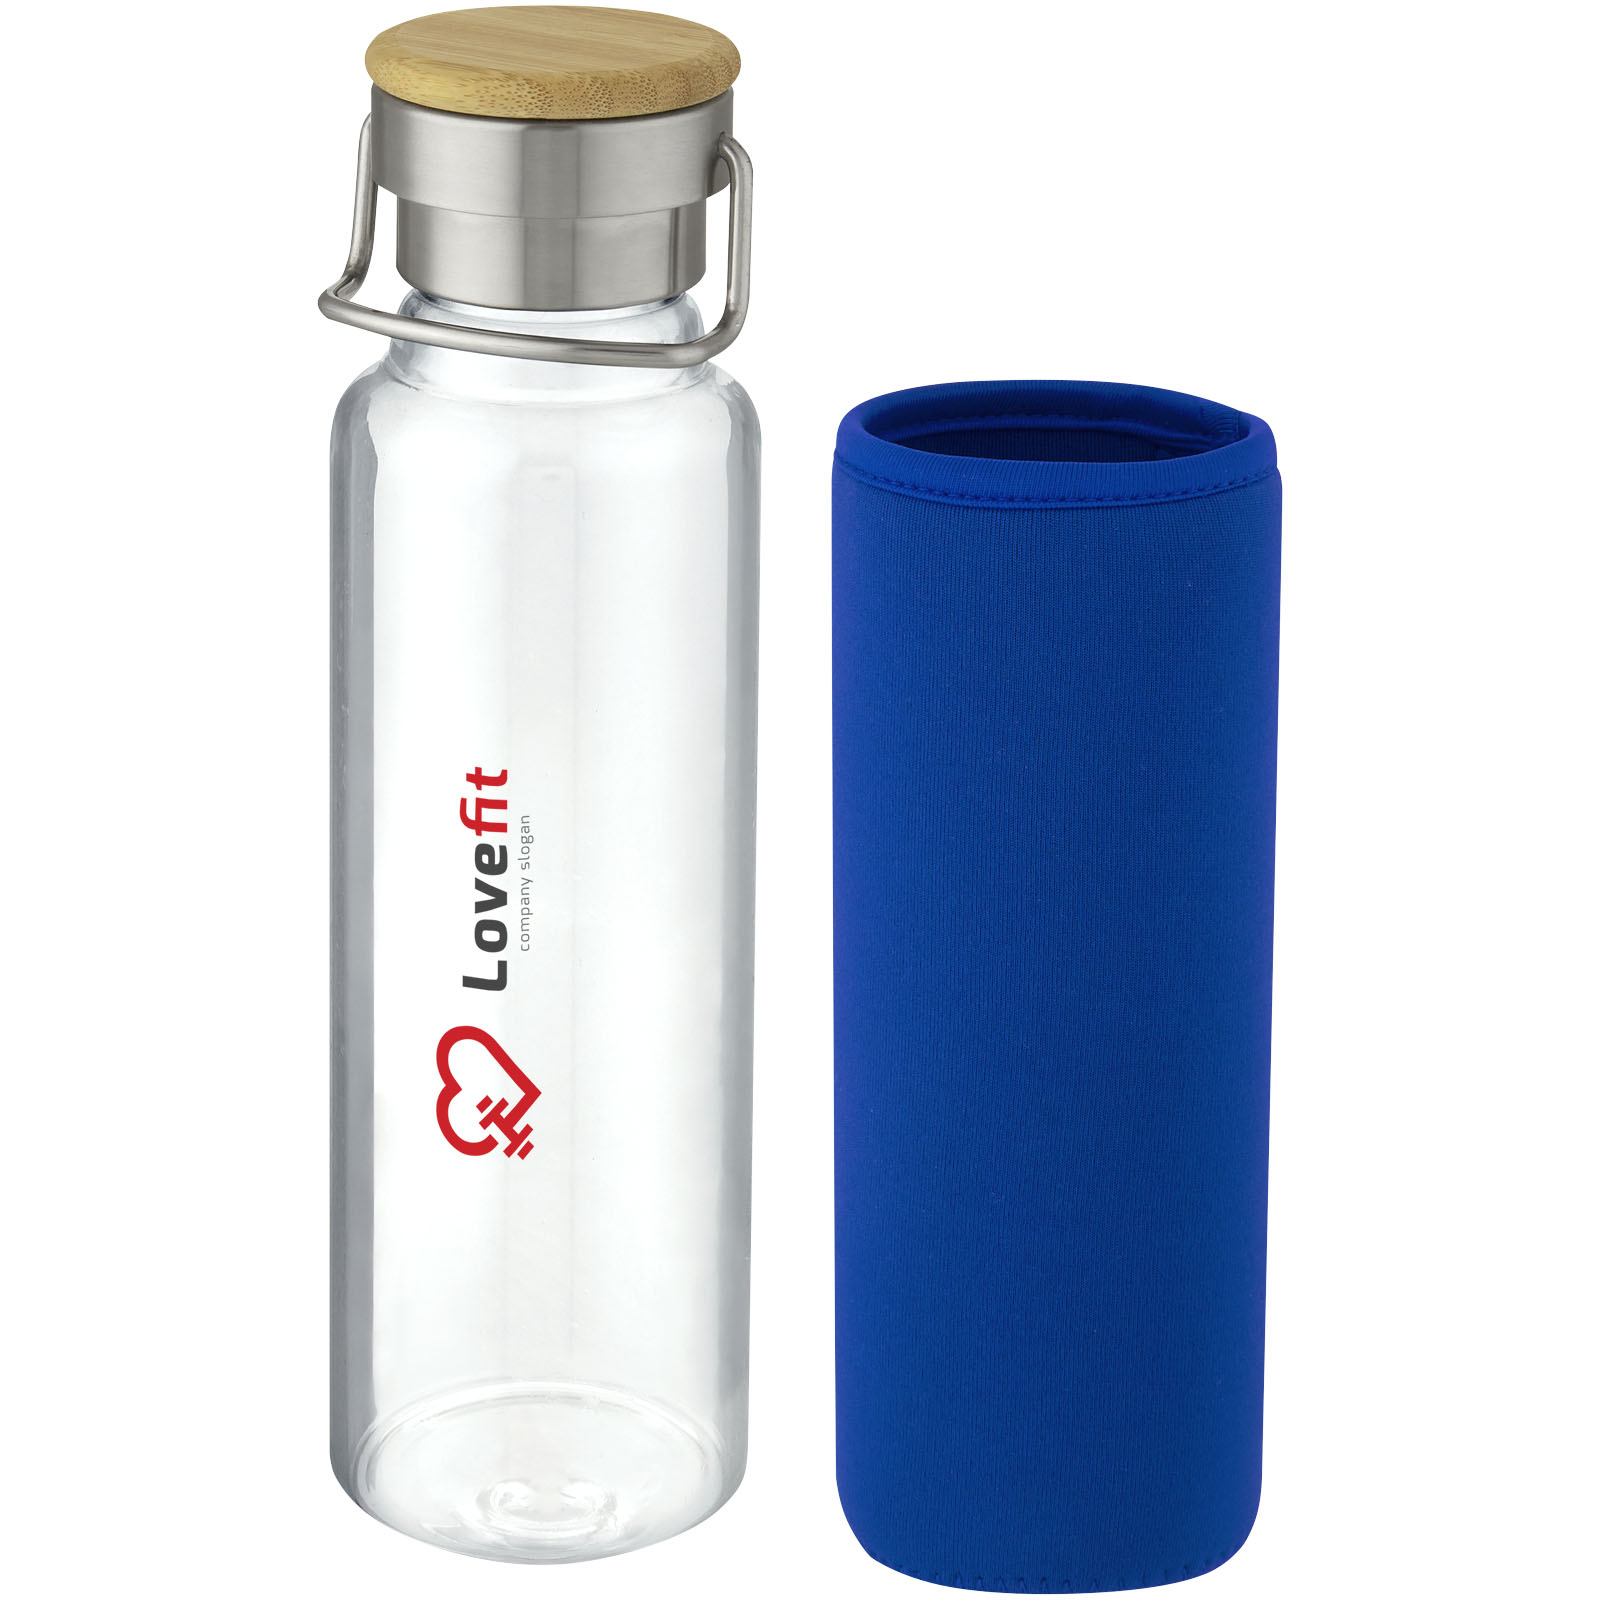 Eco Gifts Thor 660 ml glass bottle with neoprene sleeve